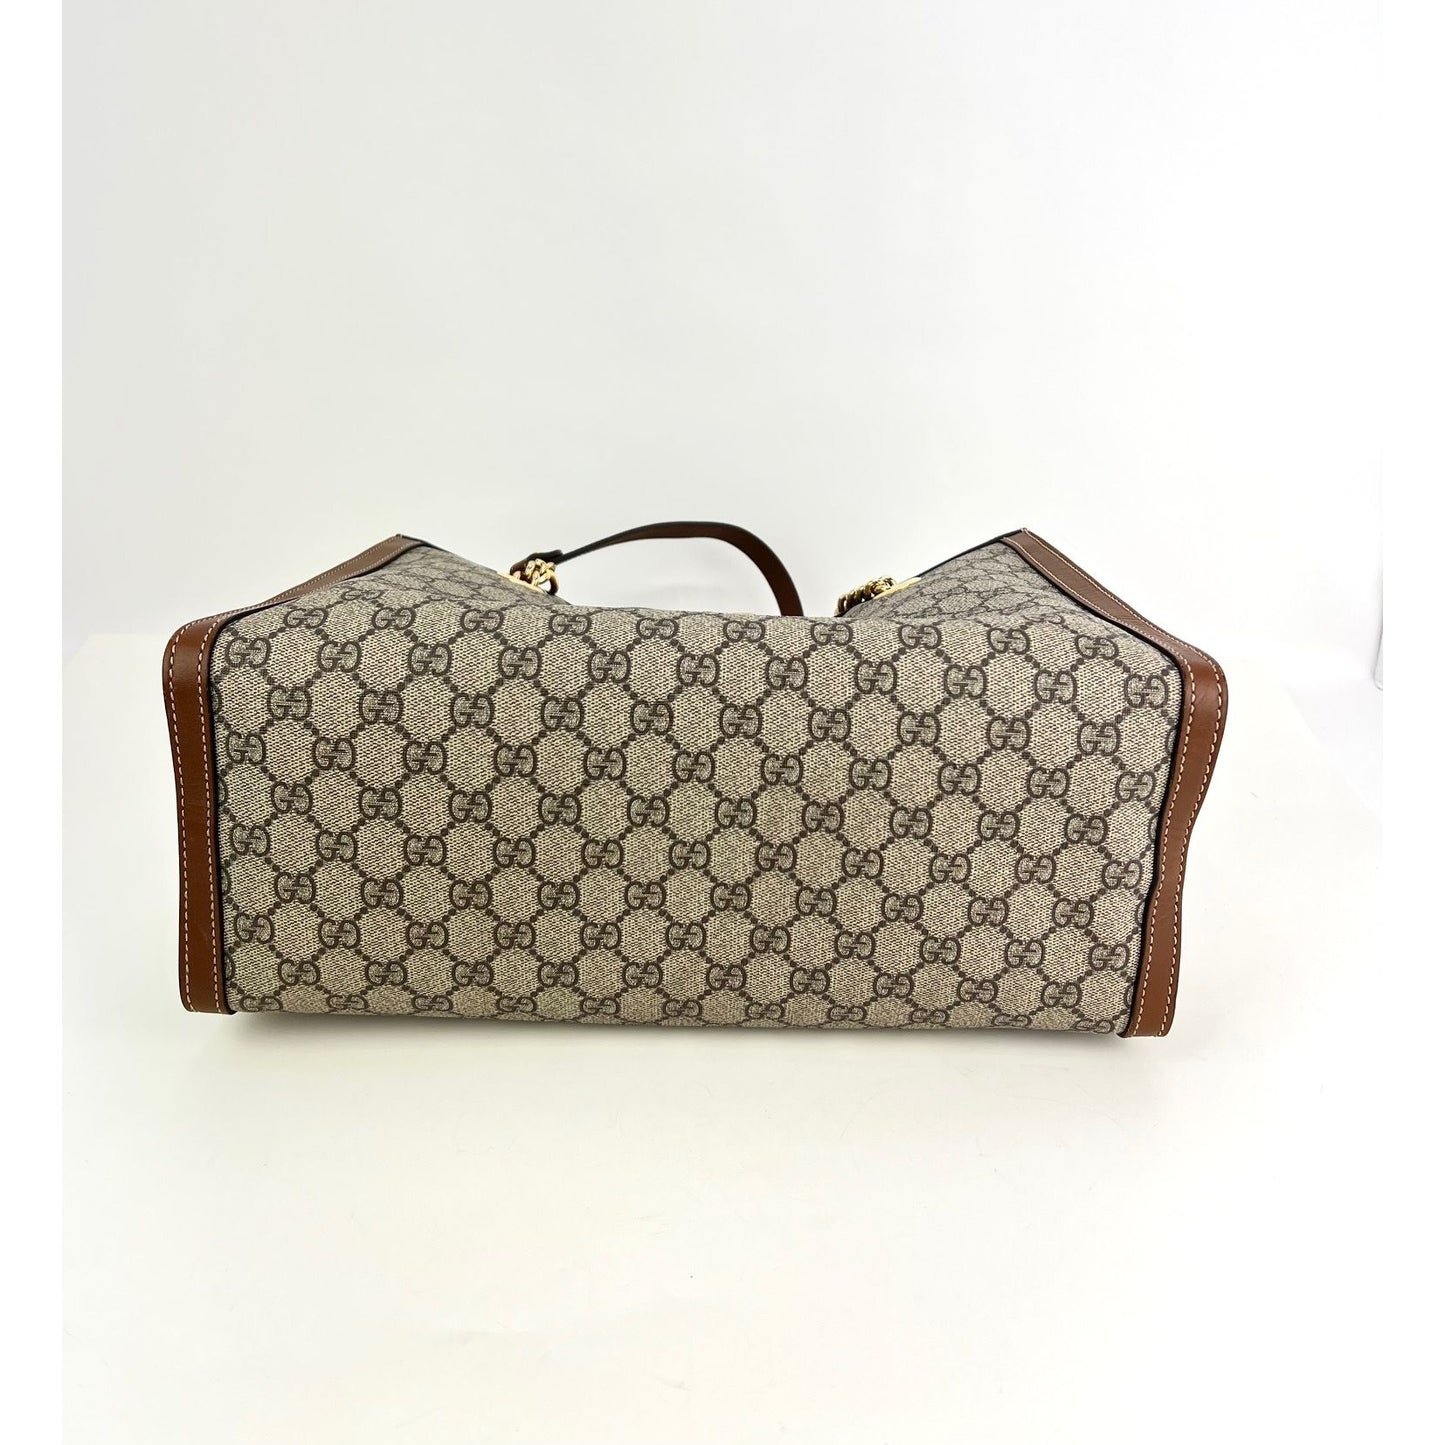 Gucci Padlock medium GG shoulder bag  Gucci bags outlet, Gucci padlock  bag, Gucci handbags outlet